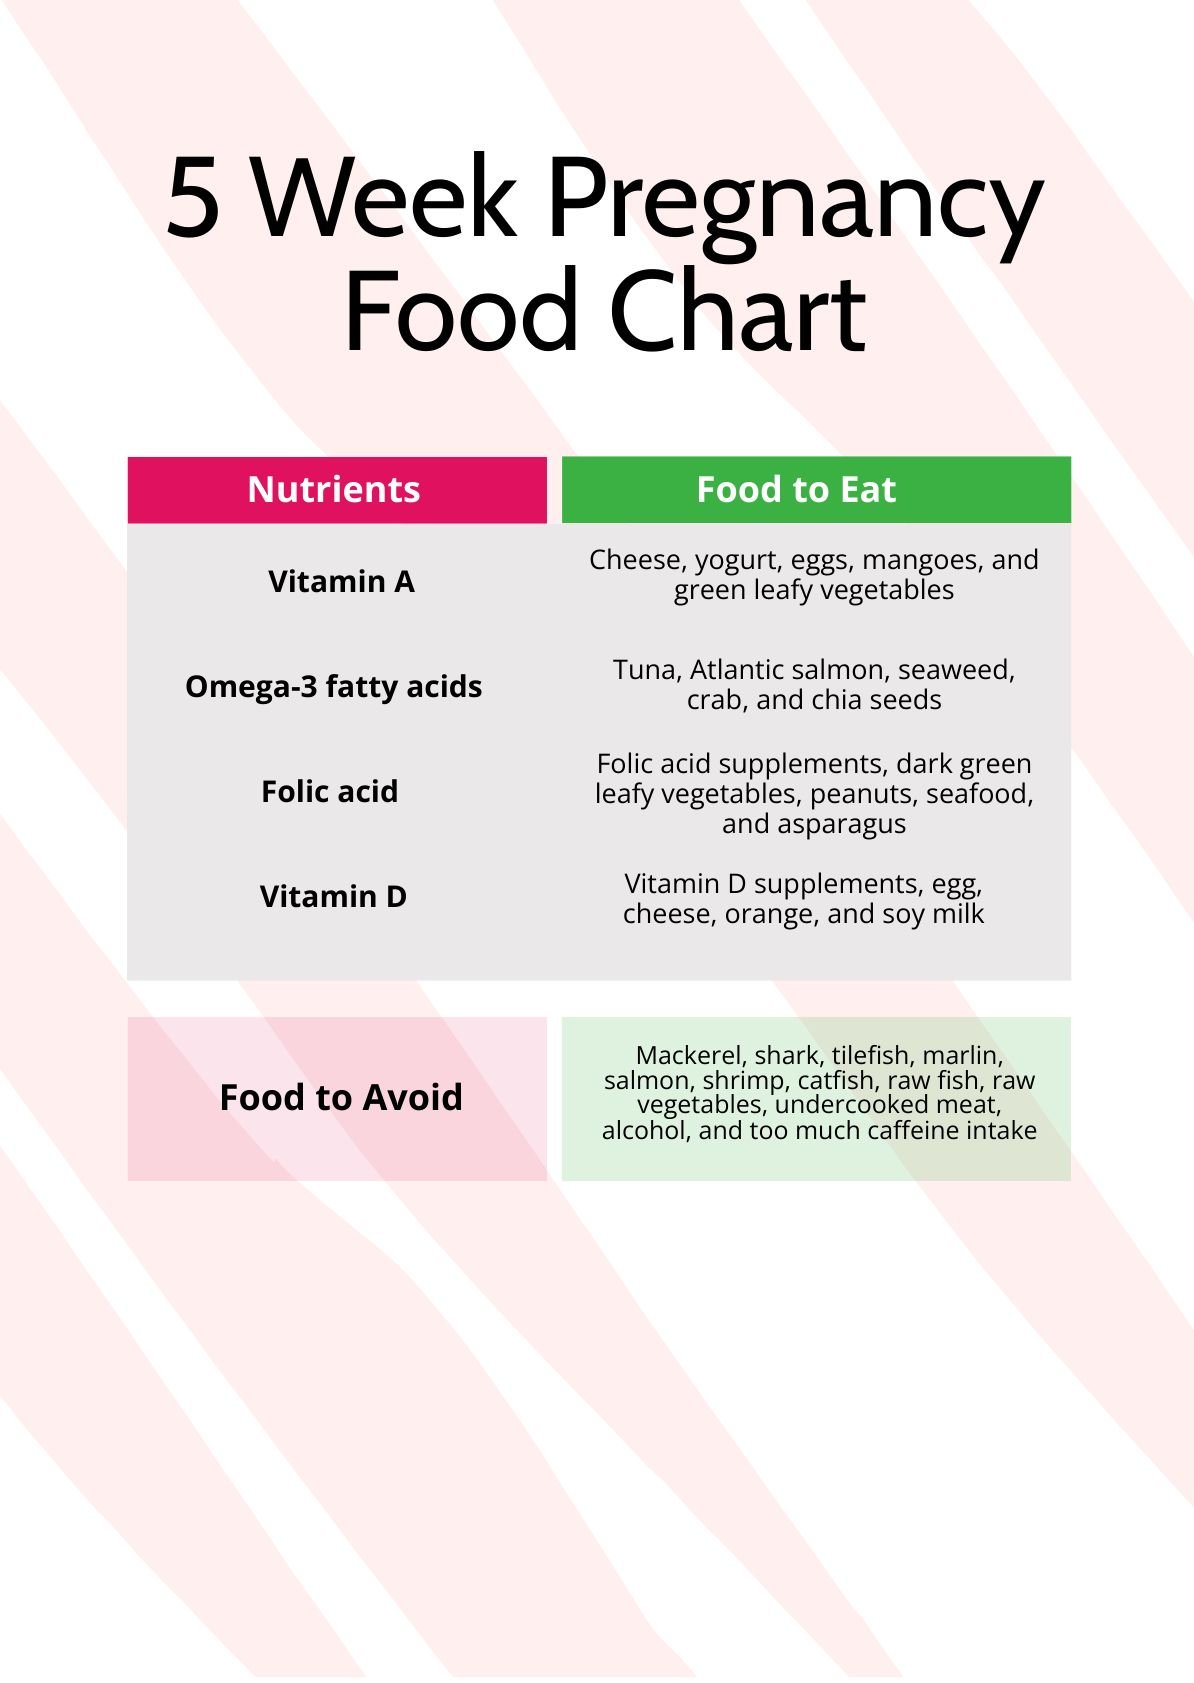 5 Week Pregnancy Food Chart